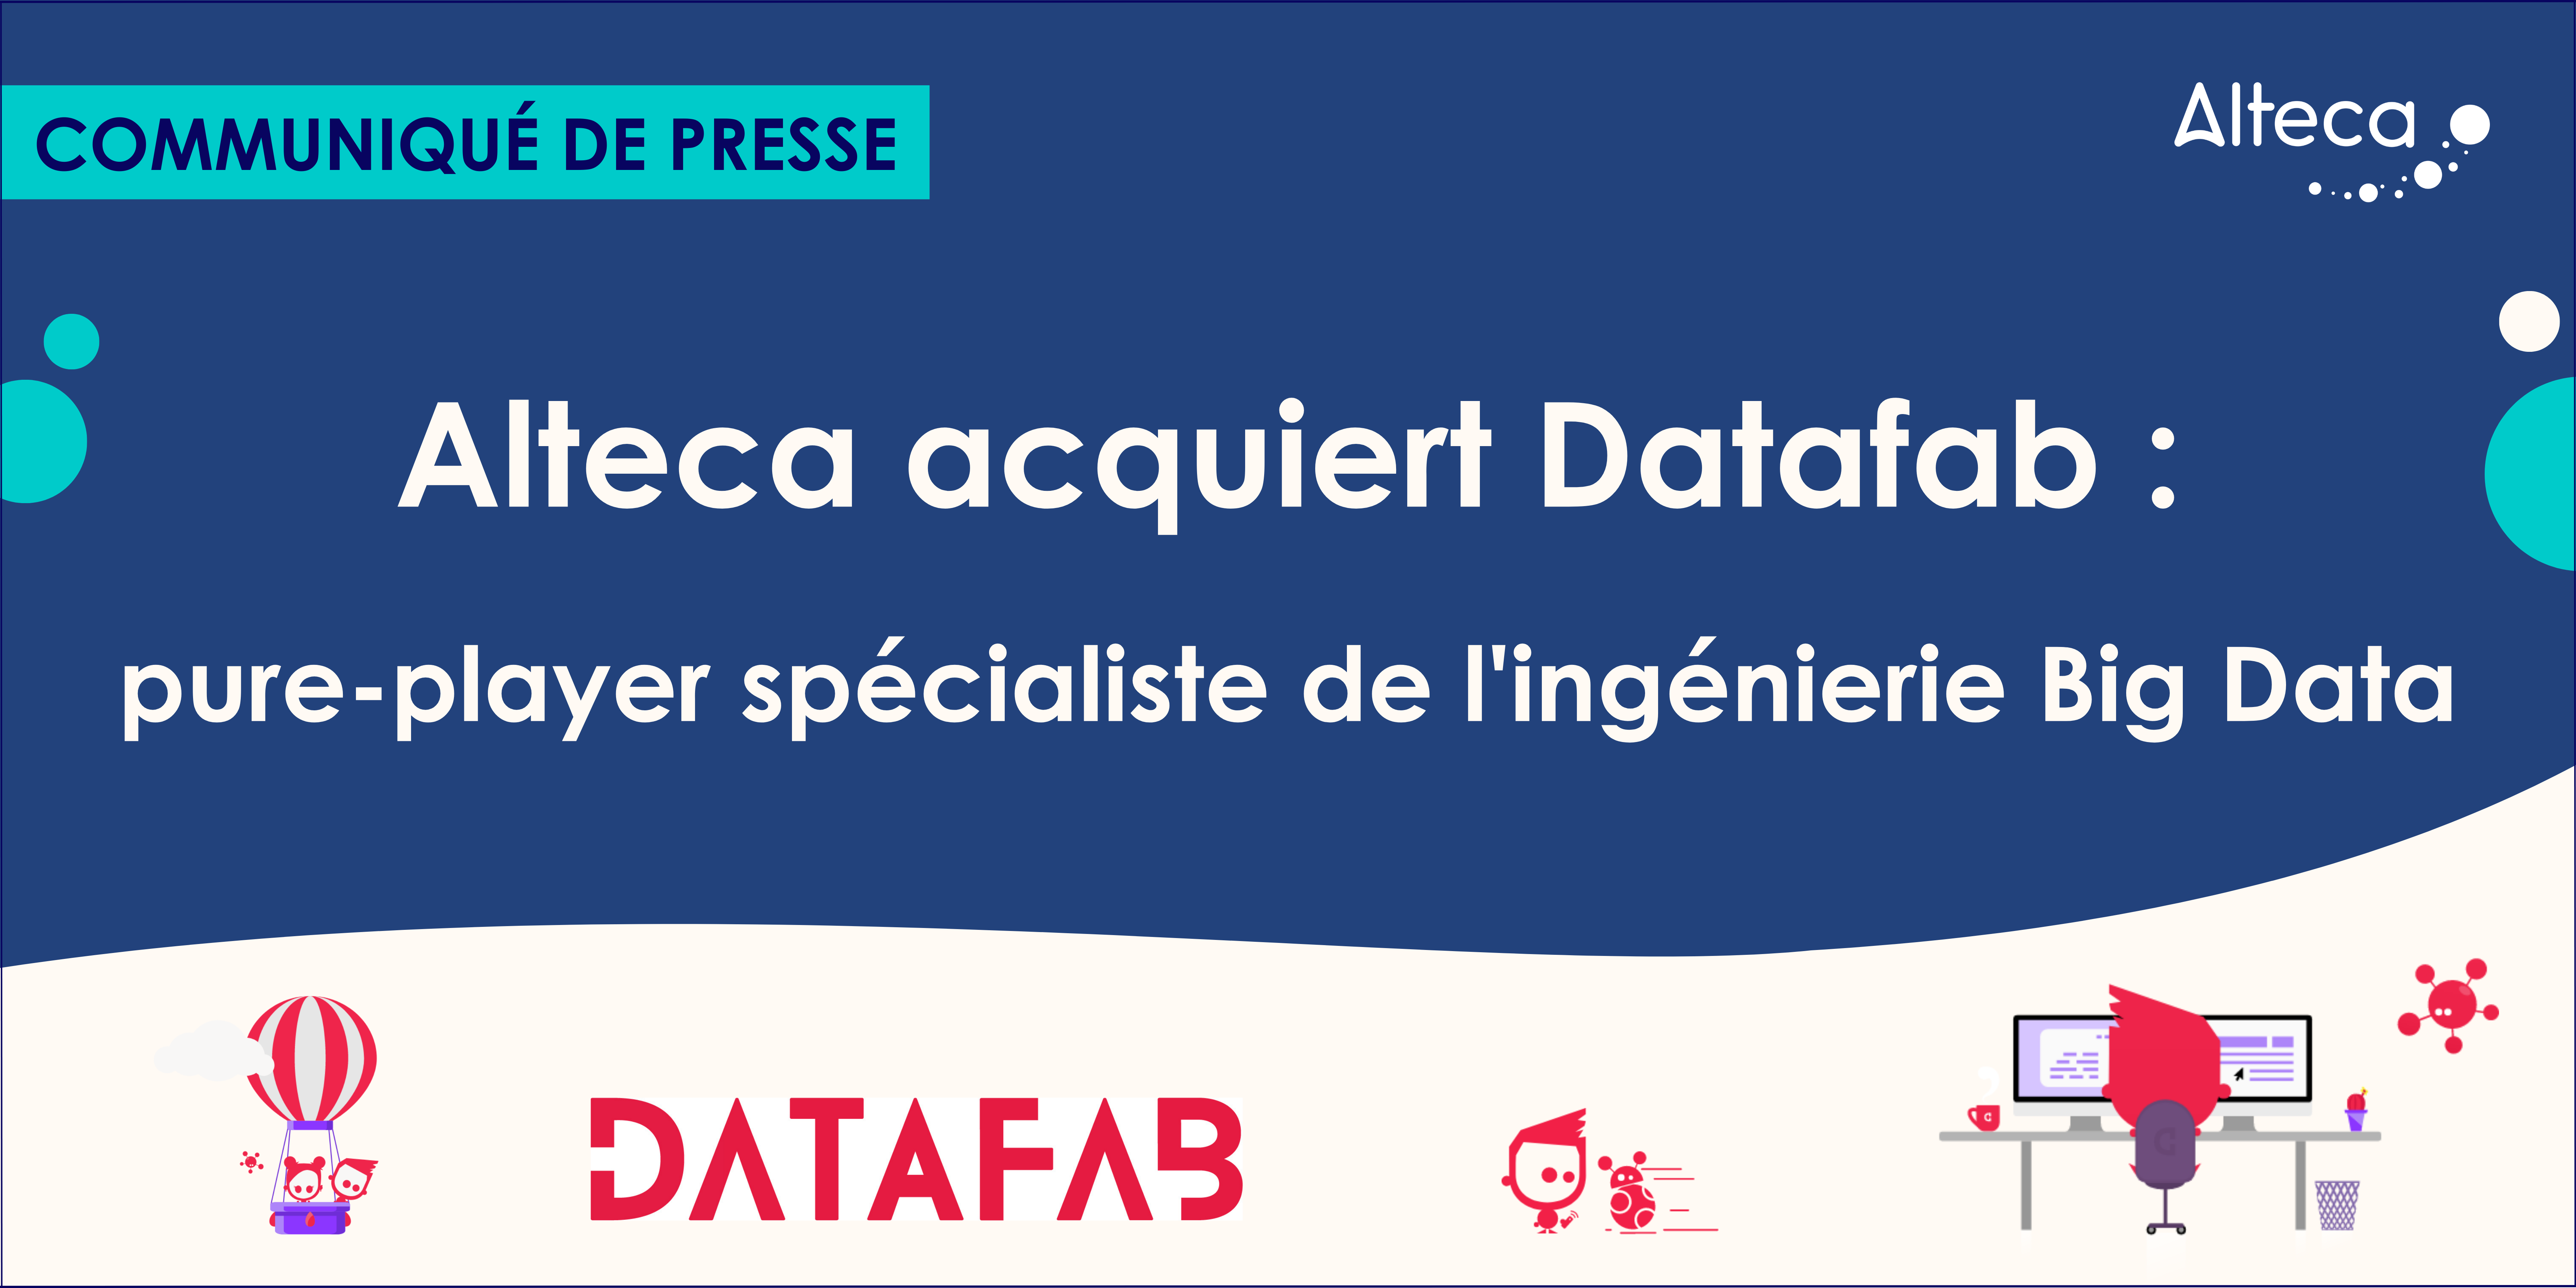 Communiqué de presse : Alteca acquiert Datafab, un pure-player spécialiste de l’ingénierie Big Data